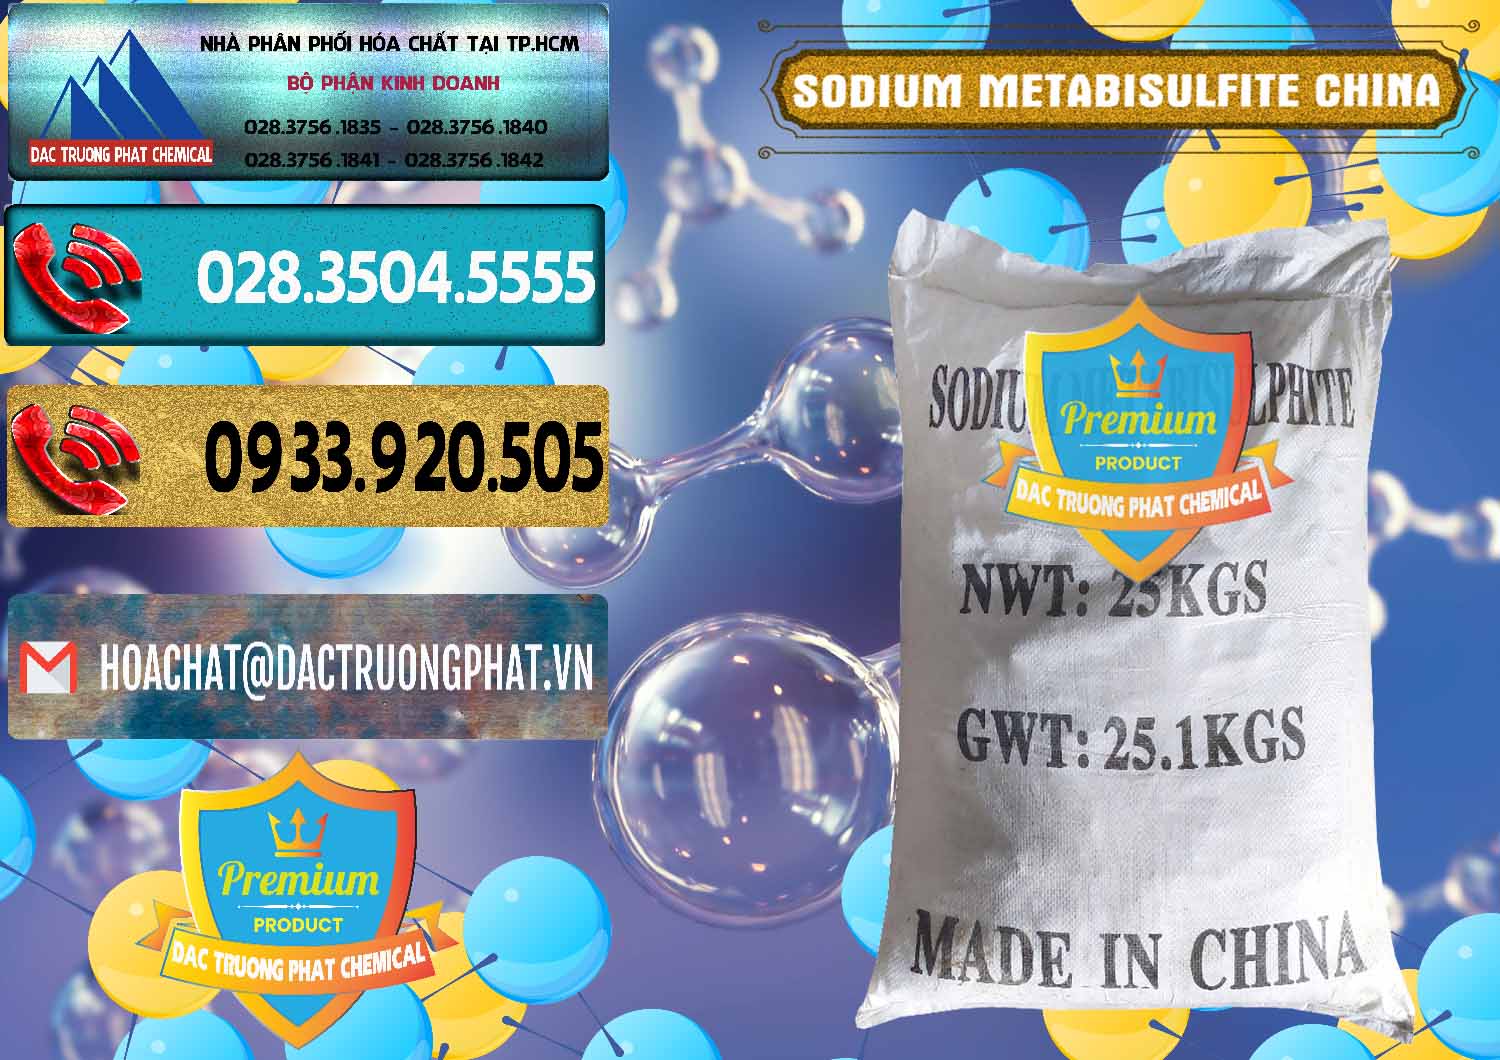 Nơi chuyên kinh doanh _ bán Sodium Metabisulfite - NA2S2O5 Trung Quốc China - 0484 - Nơi cung cấp _ bán hóa chất tại TP.HCM - hoachatdetnhuom.com